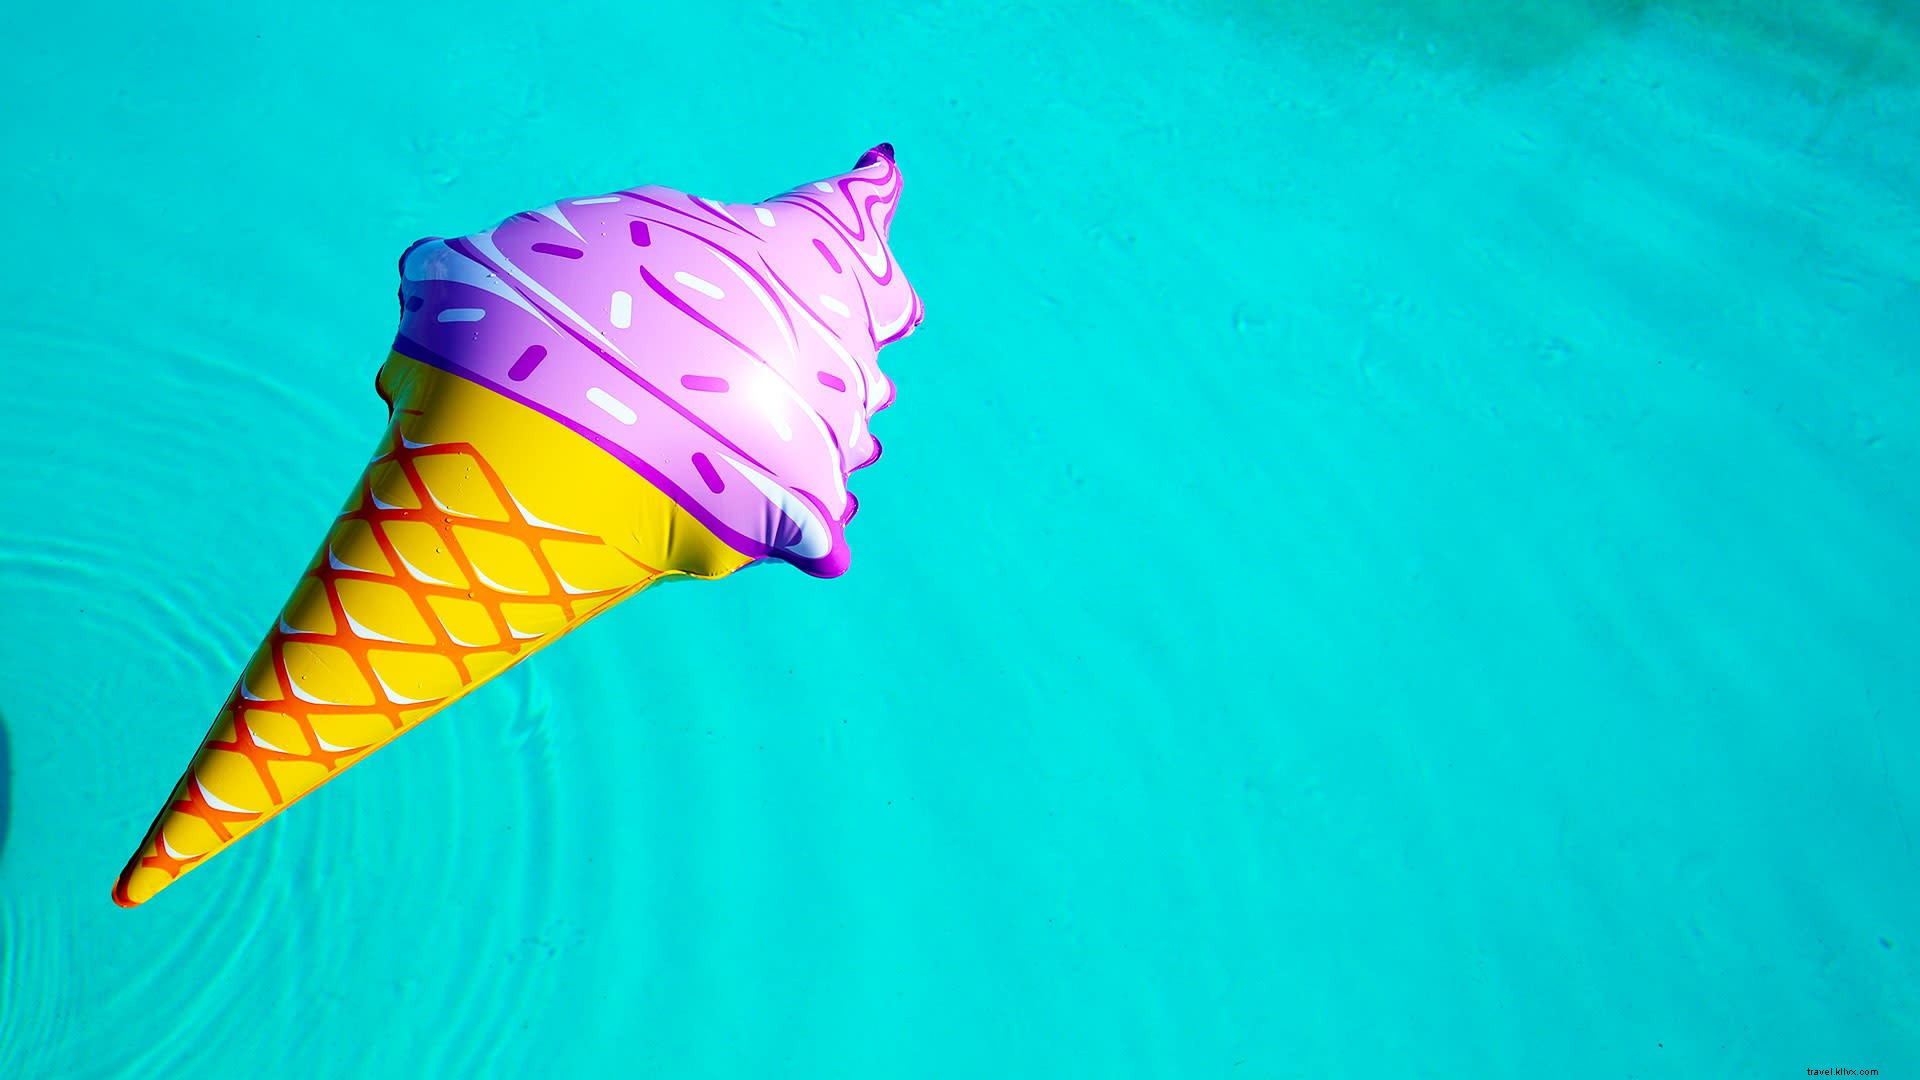 10 acessórios indispensáveis ​​para festas na piscina para o verão 